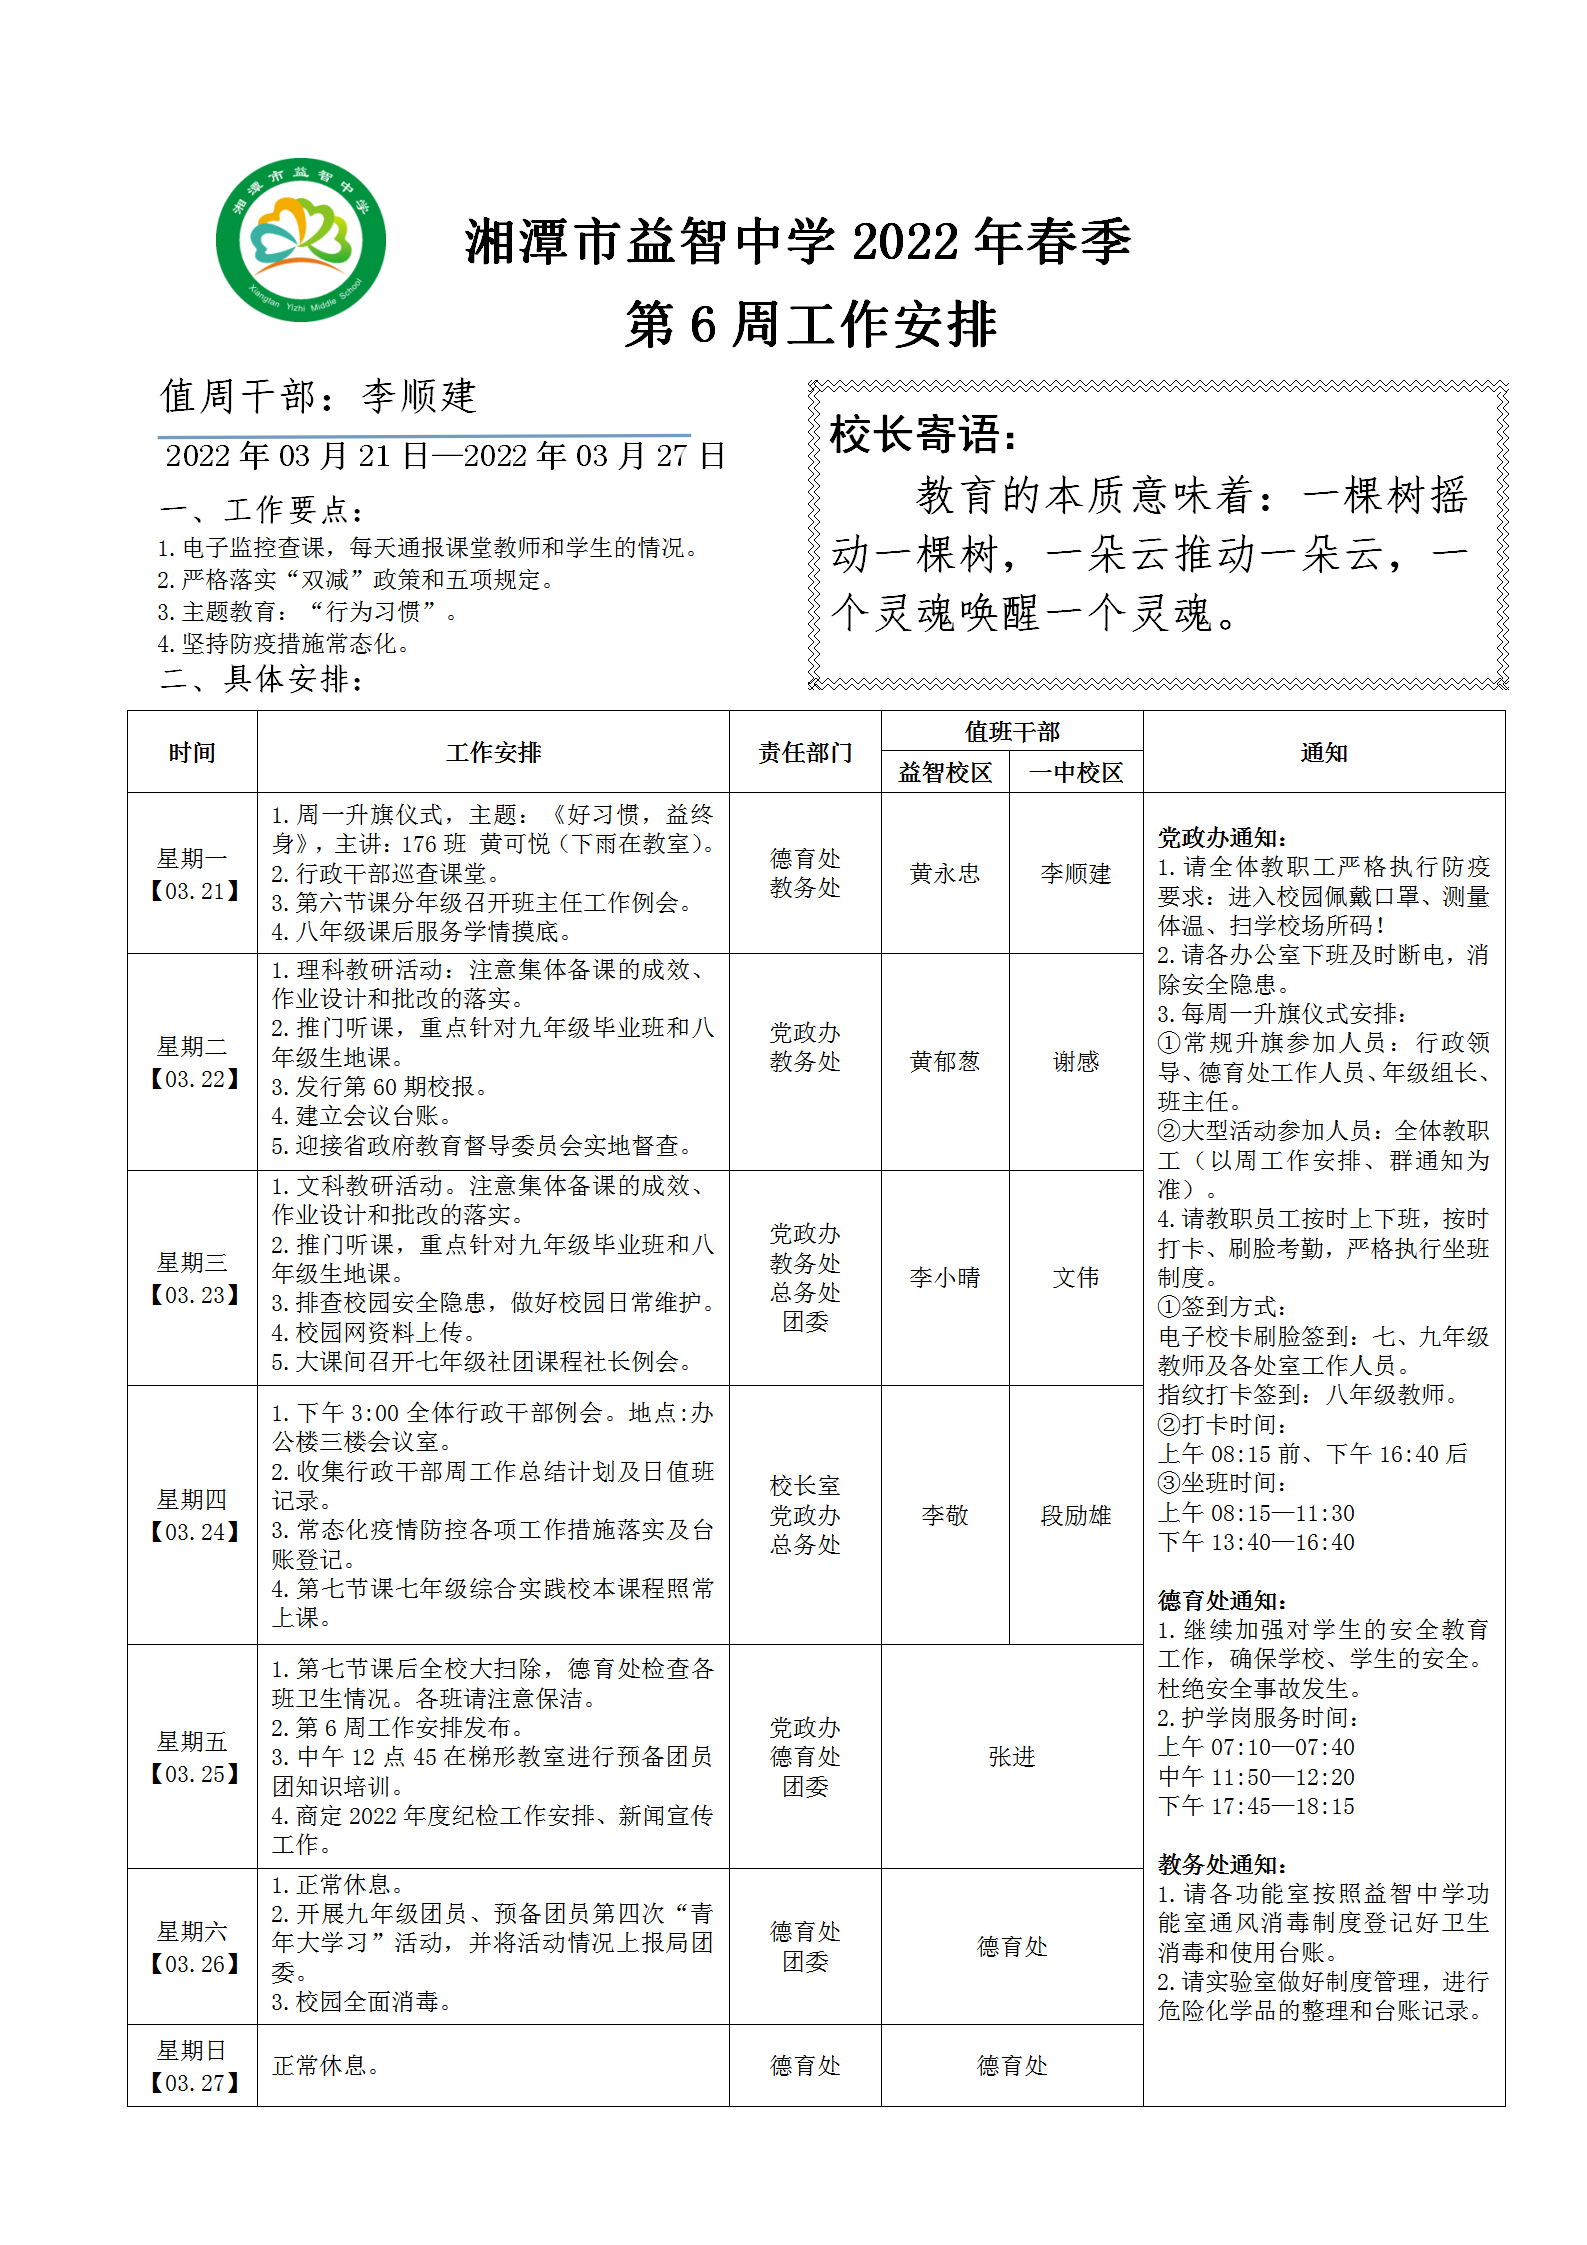 湘潭市益智中学2022年春季第六周工作安排